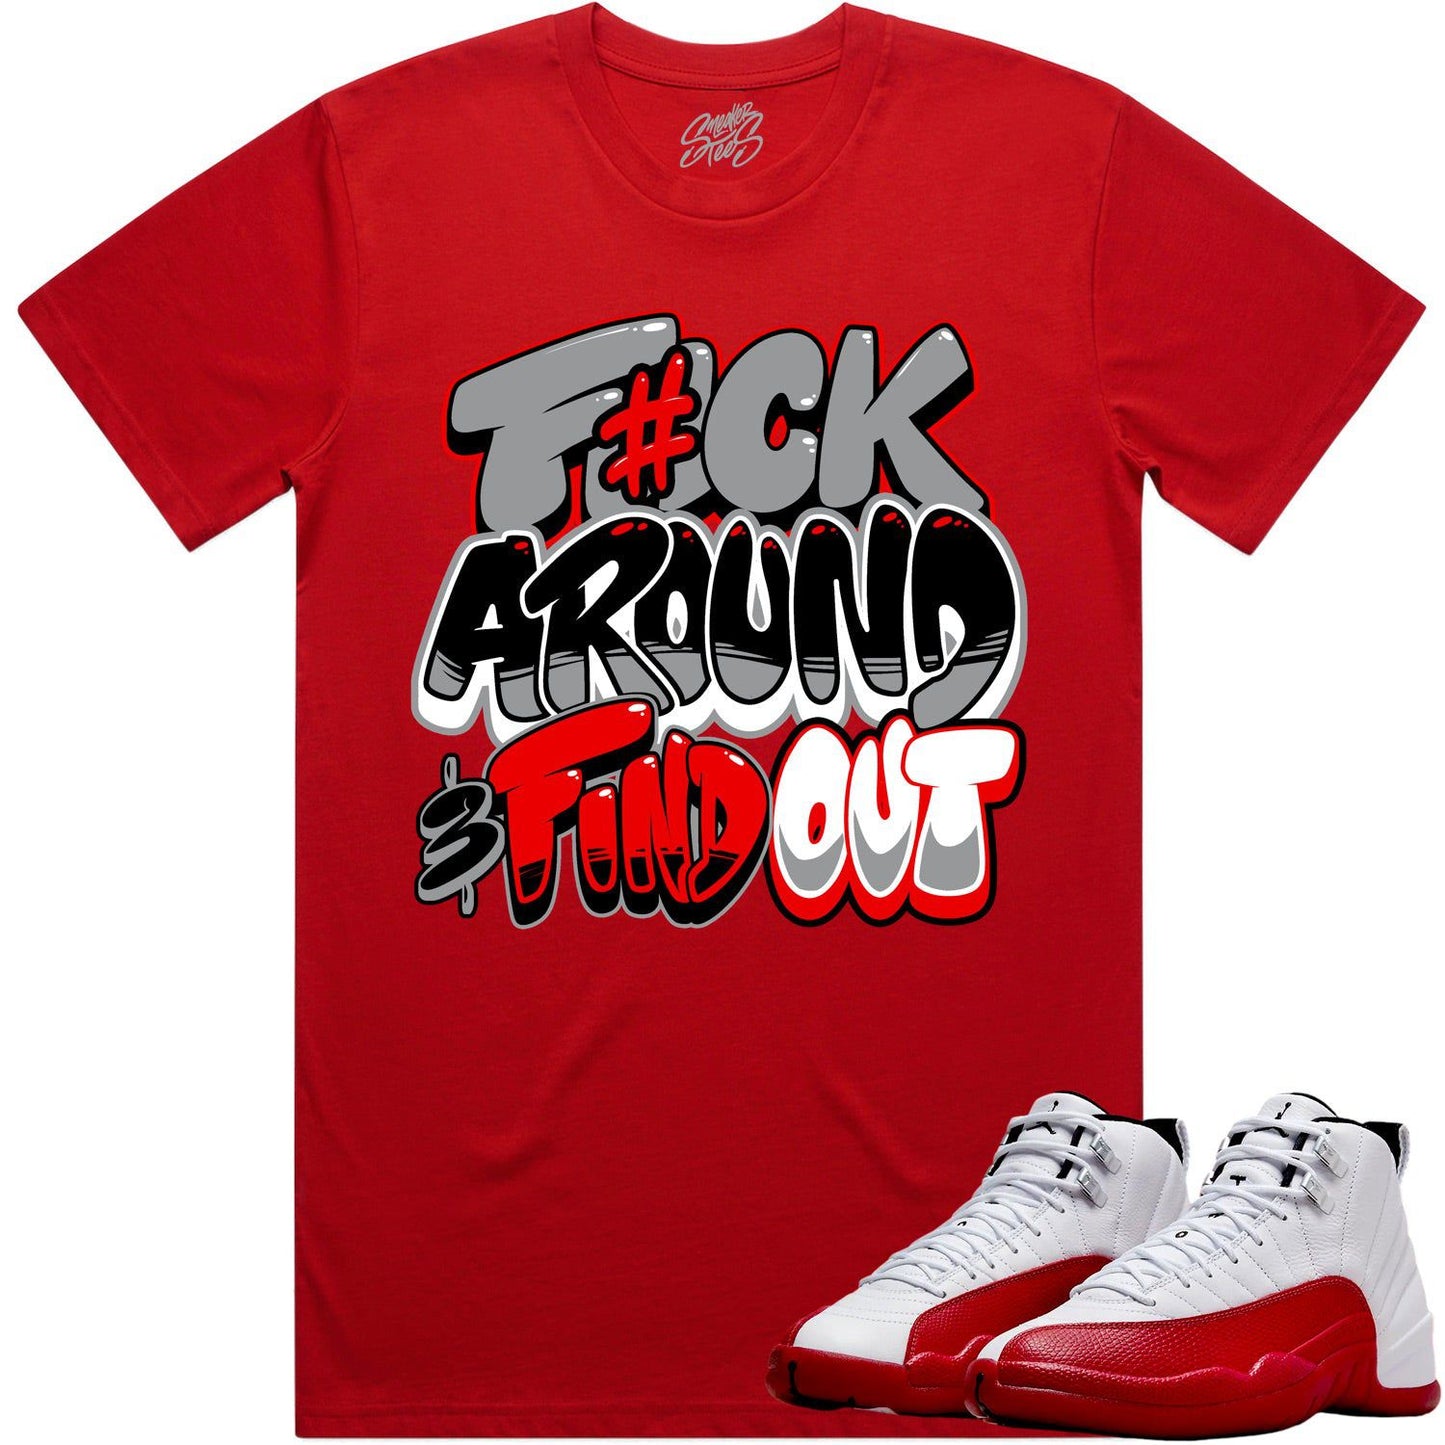 Cherry 12s Shirt - Jordan Retro 12 Cherry Shirts - Red F#ck Around